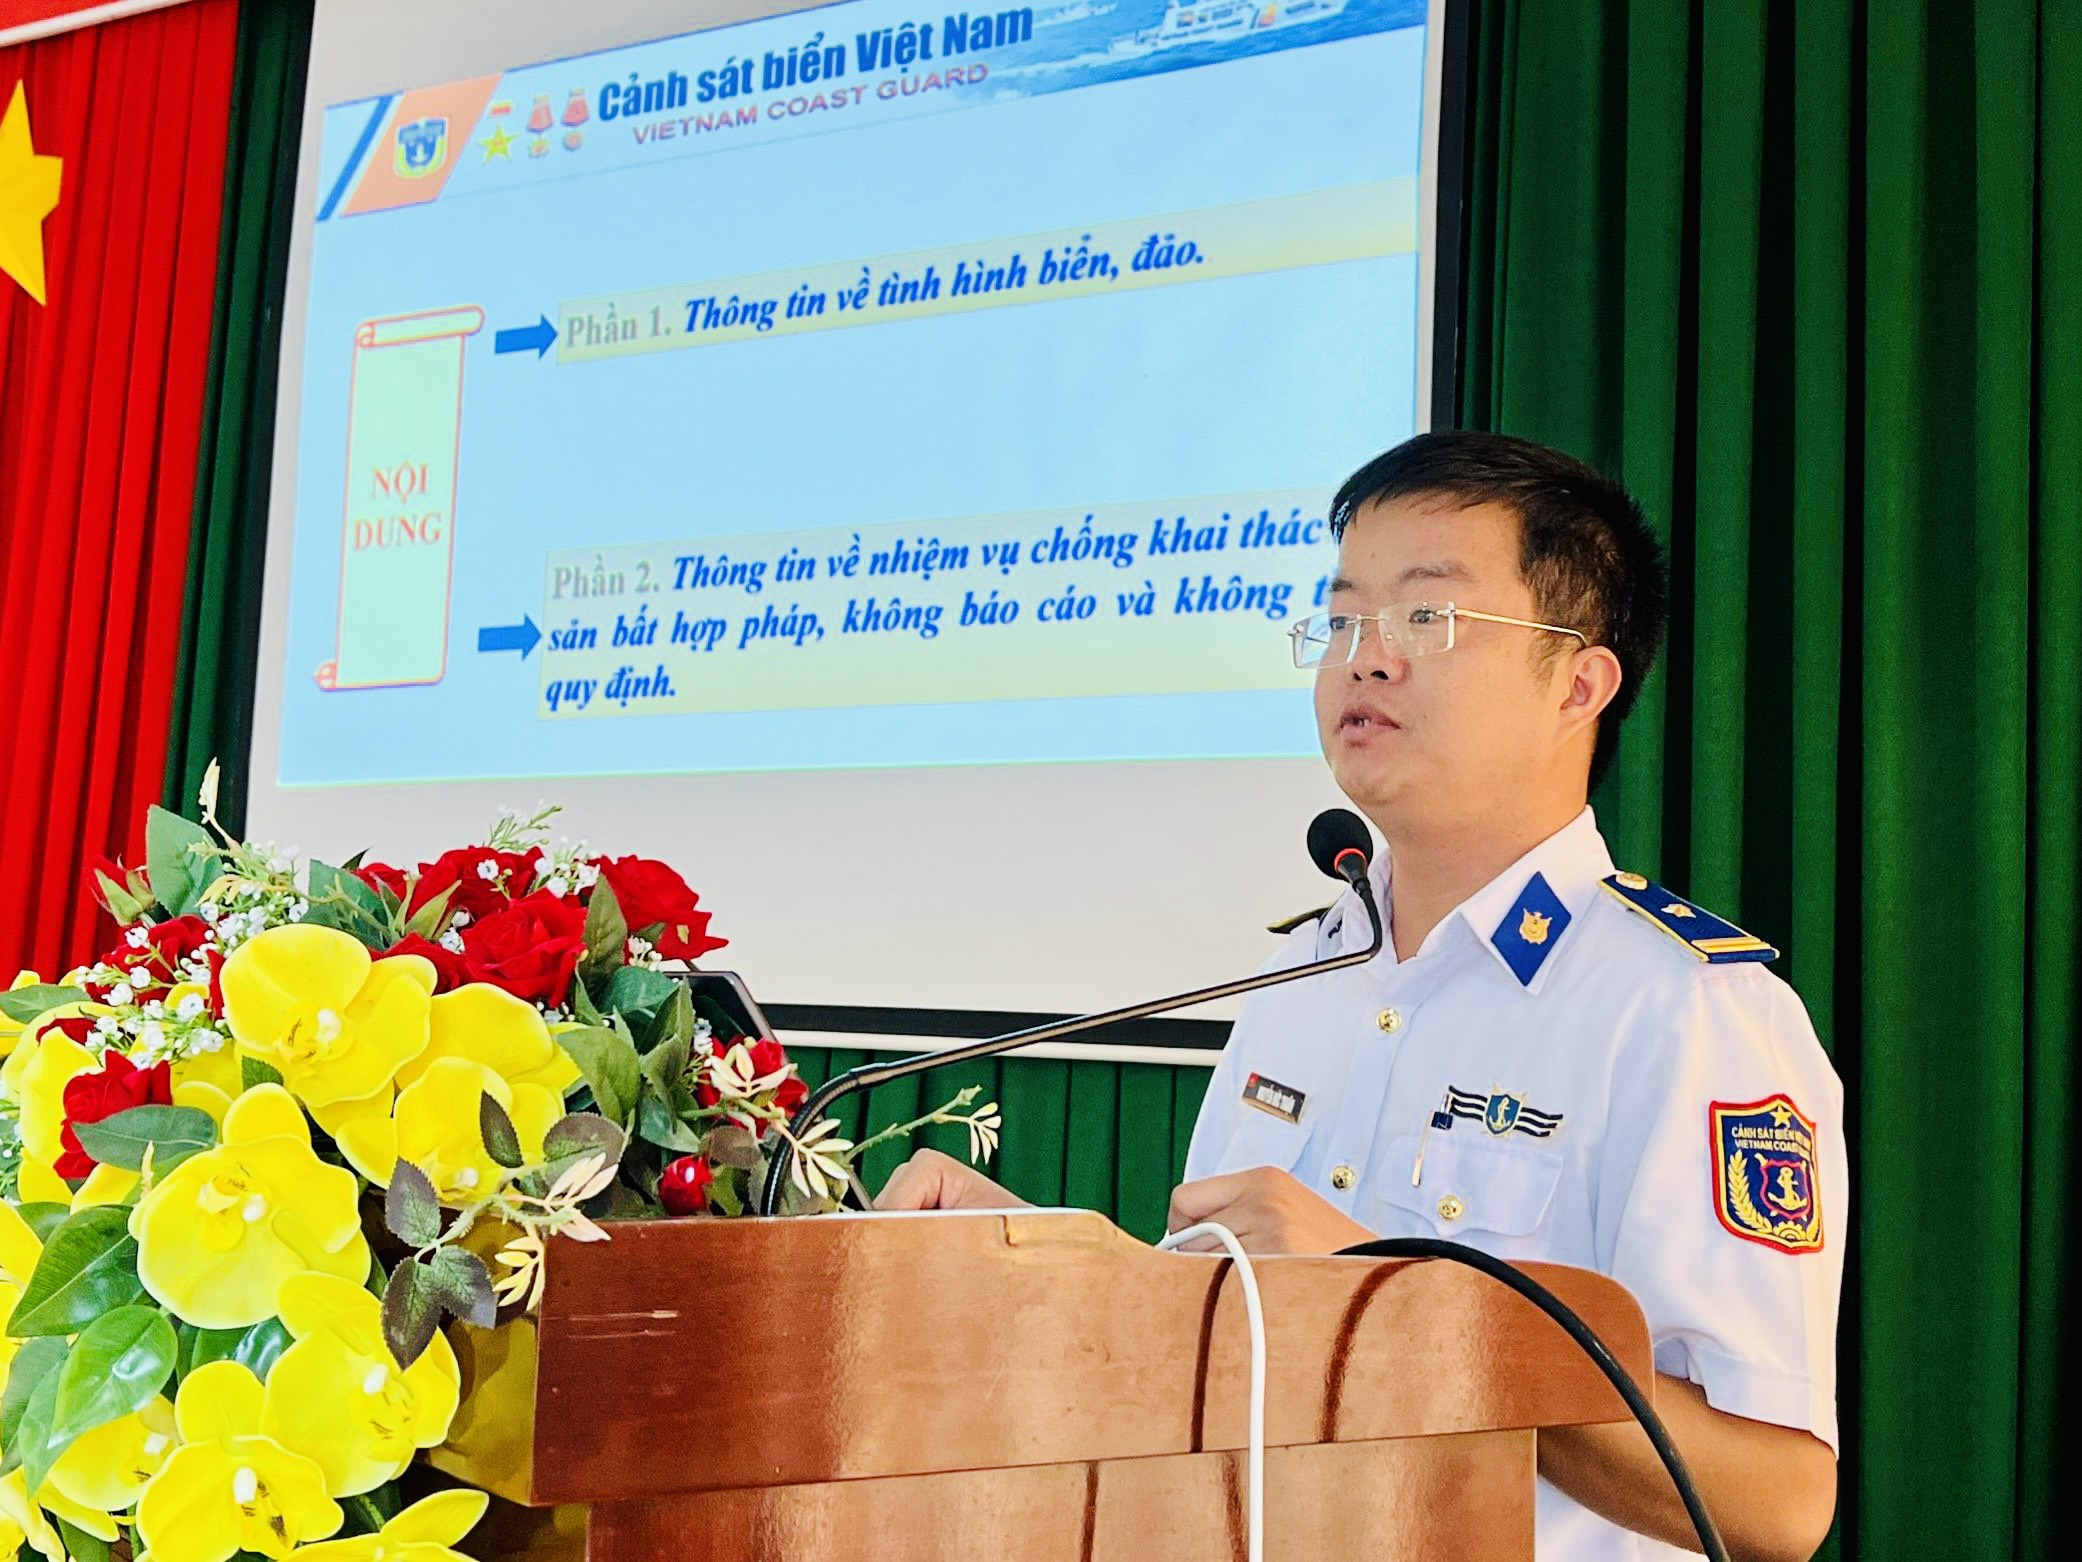 Thiếu tá Nguyễn Đức Thuận chính trị viên Hải đội 33 thực hiện nội dung tuyên truyền.